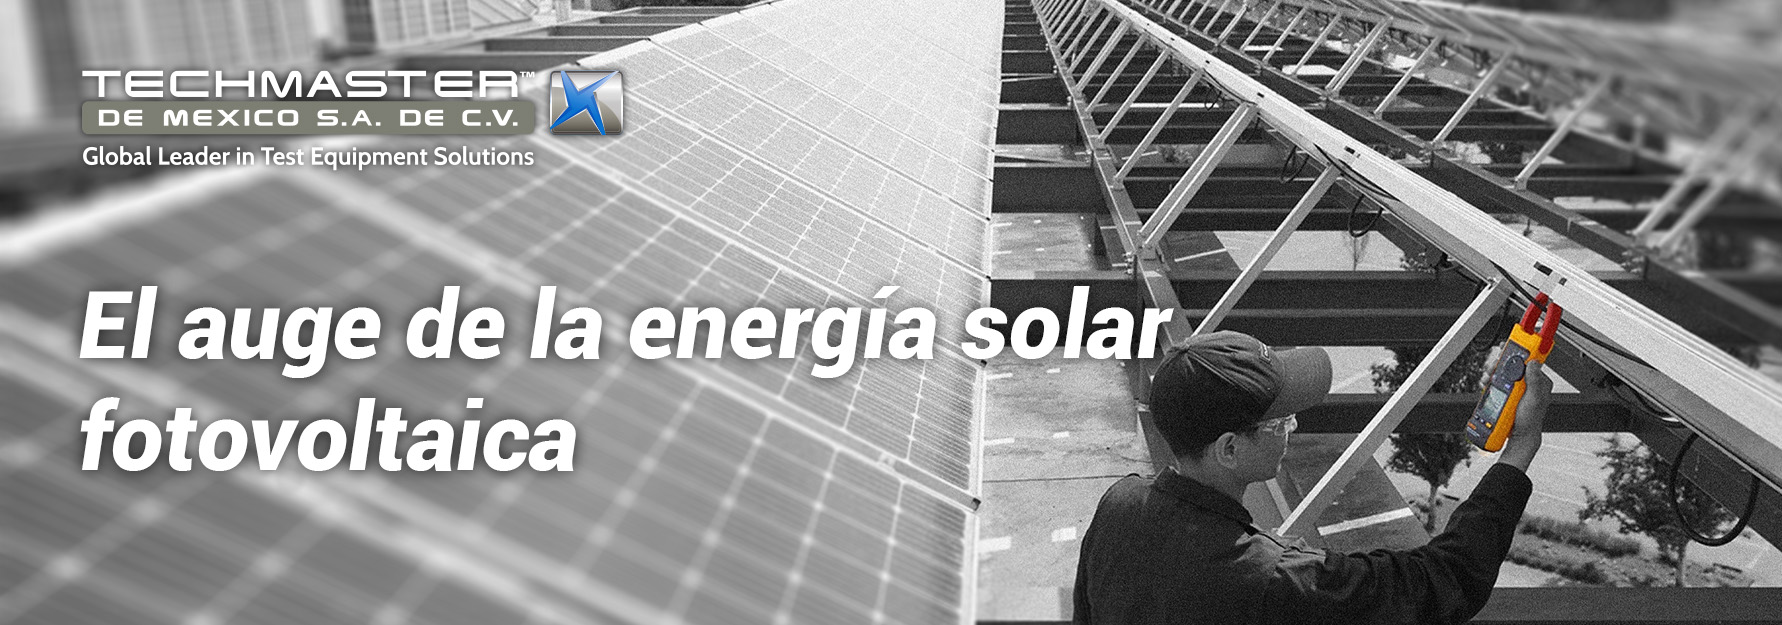 El auge de la energía solar fotovoltaica